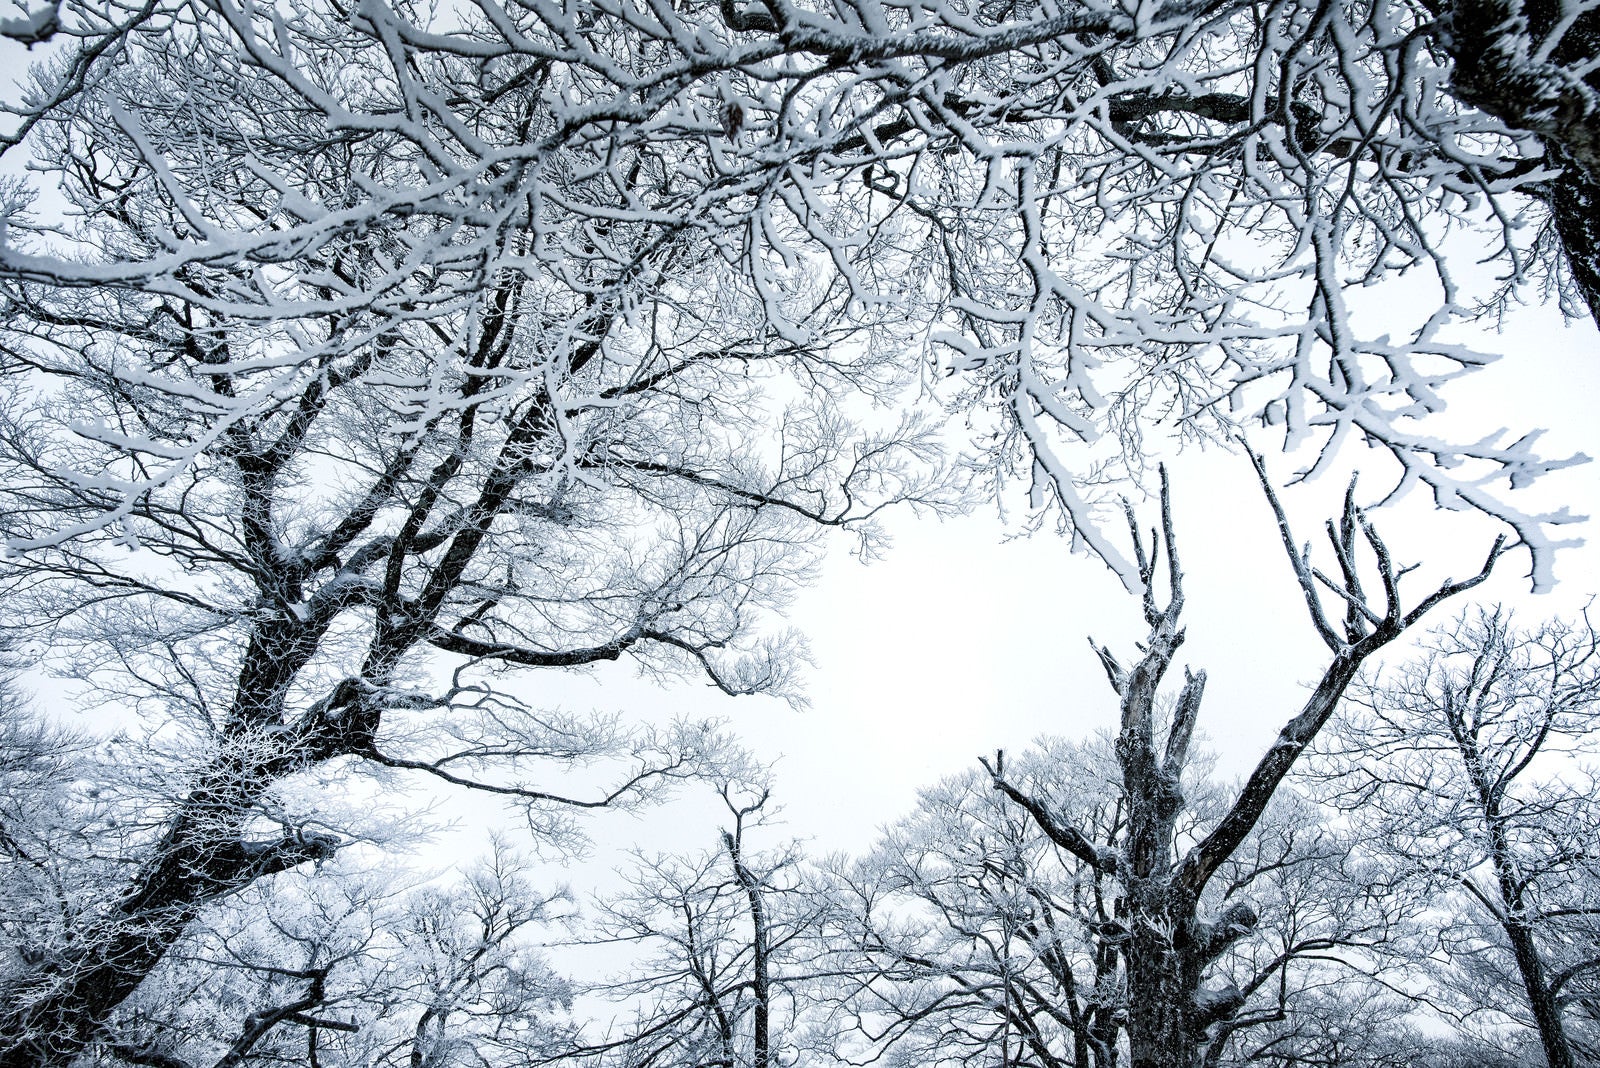 「降雪の森と積雪の木々」の写真